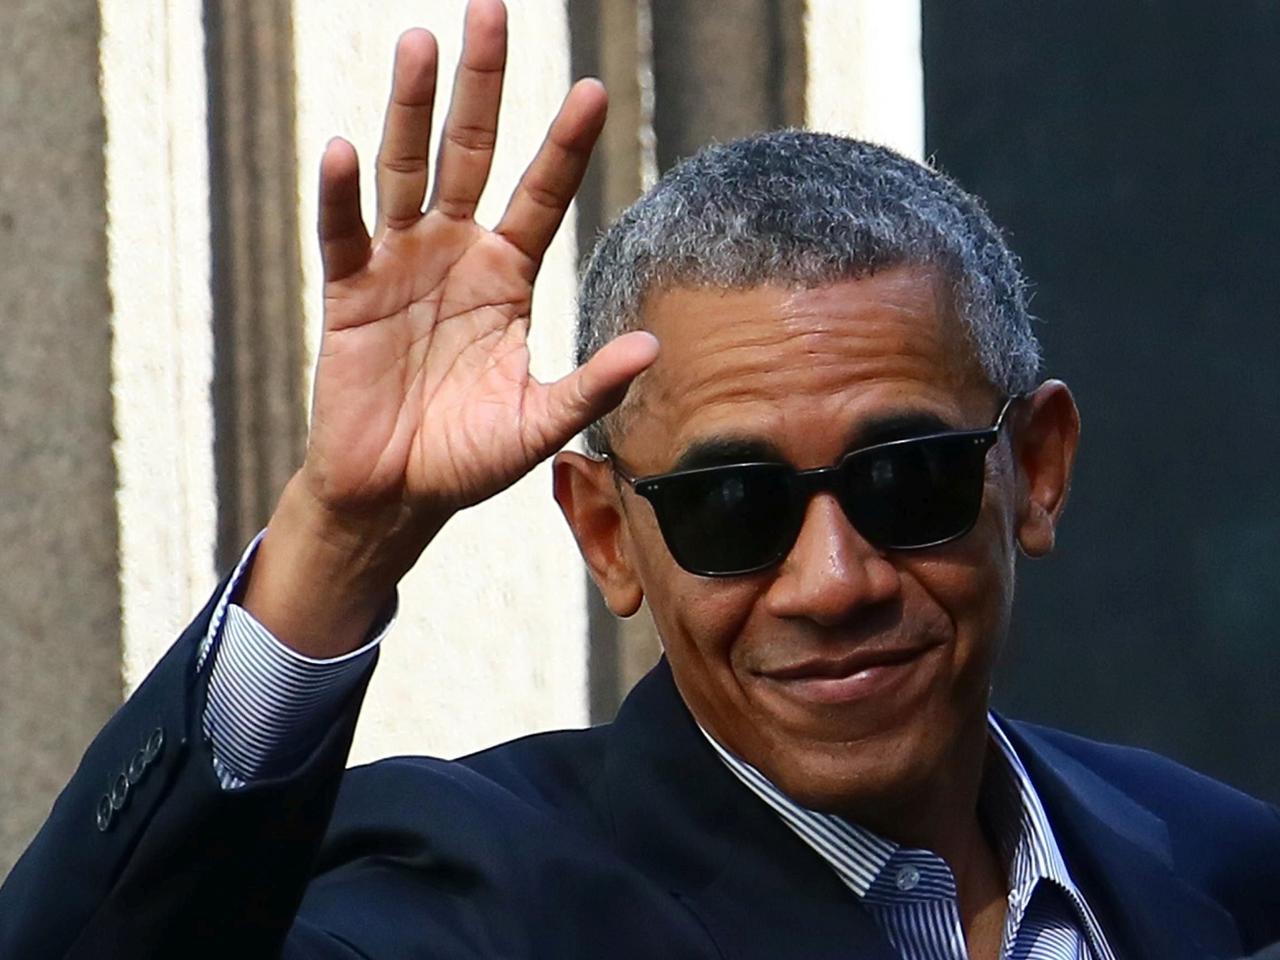 Barack Obama: età, lavoro, moglie, figlie, patrimonio - Stasera a Che tempo che fa - Tutto su di lui